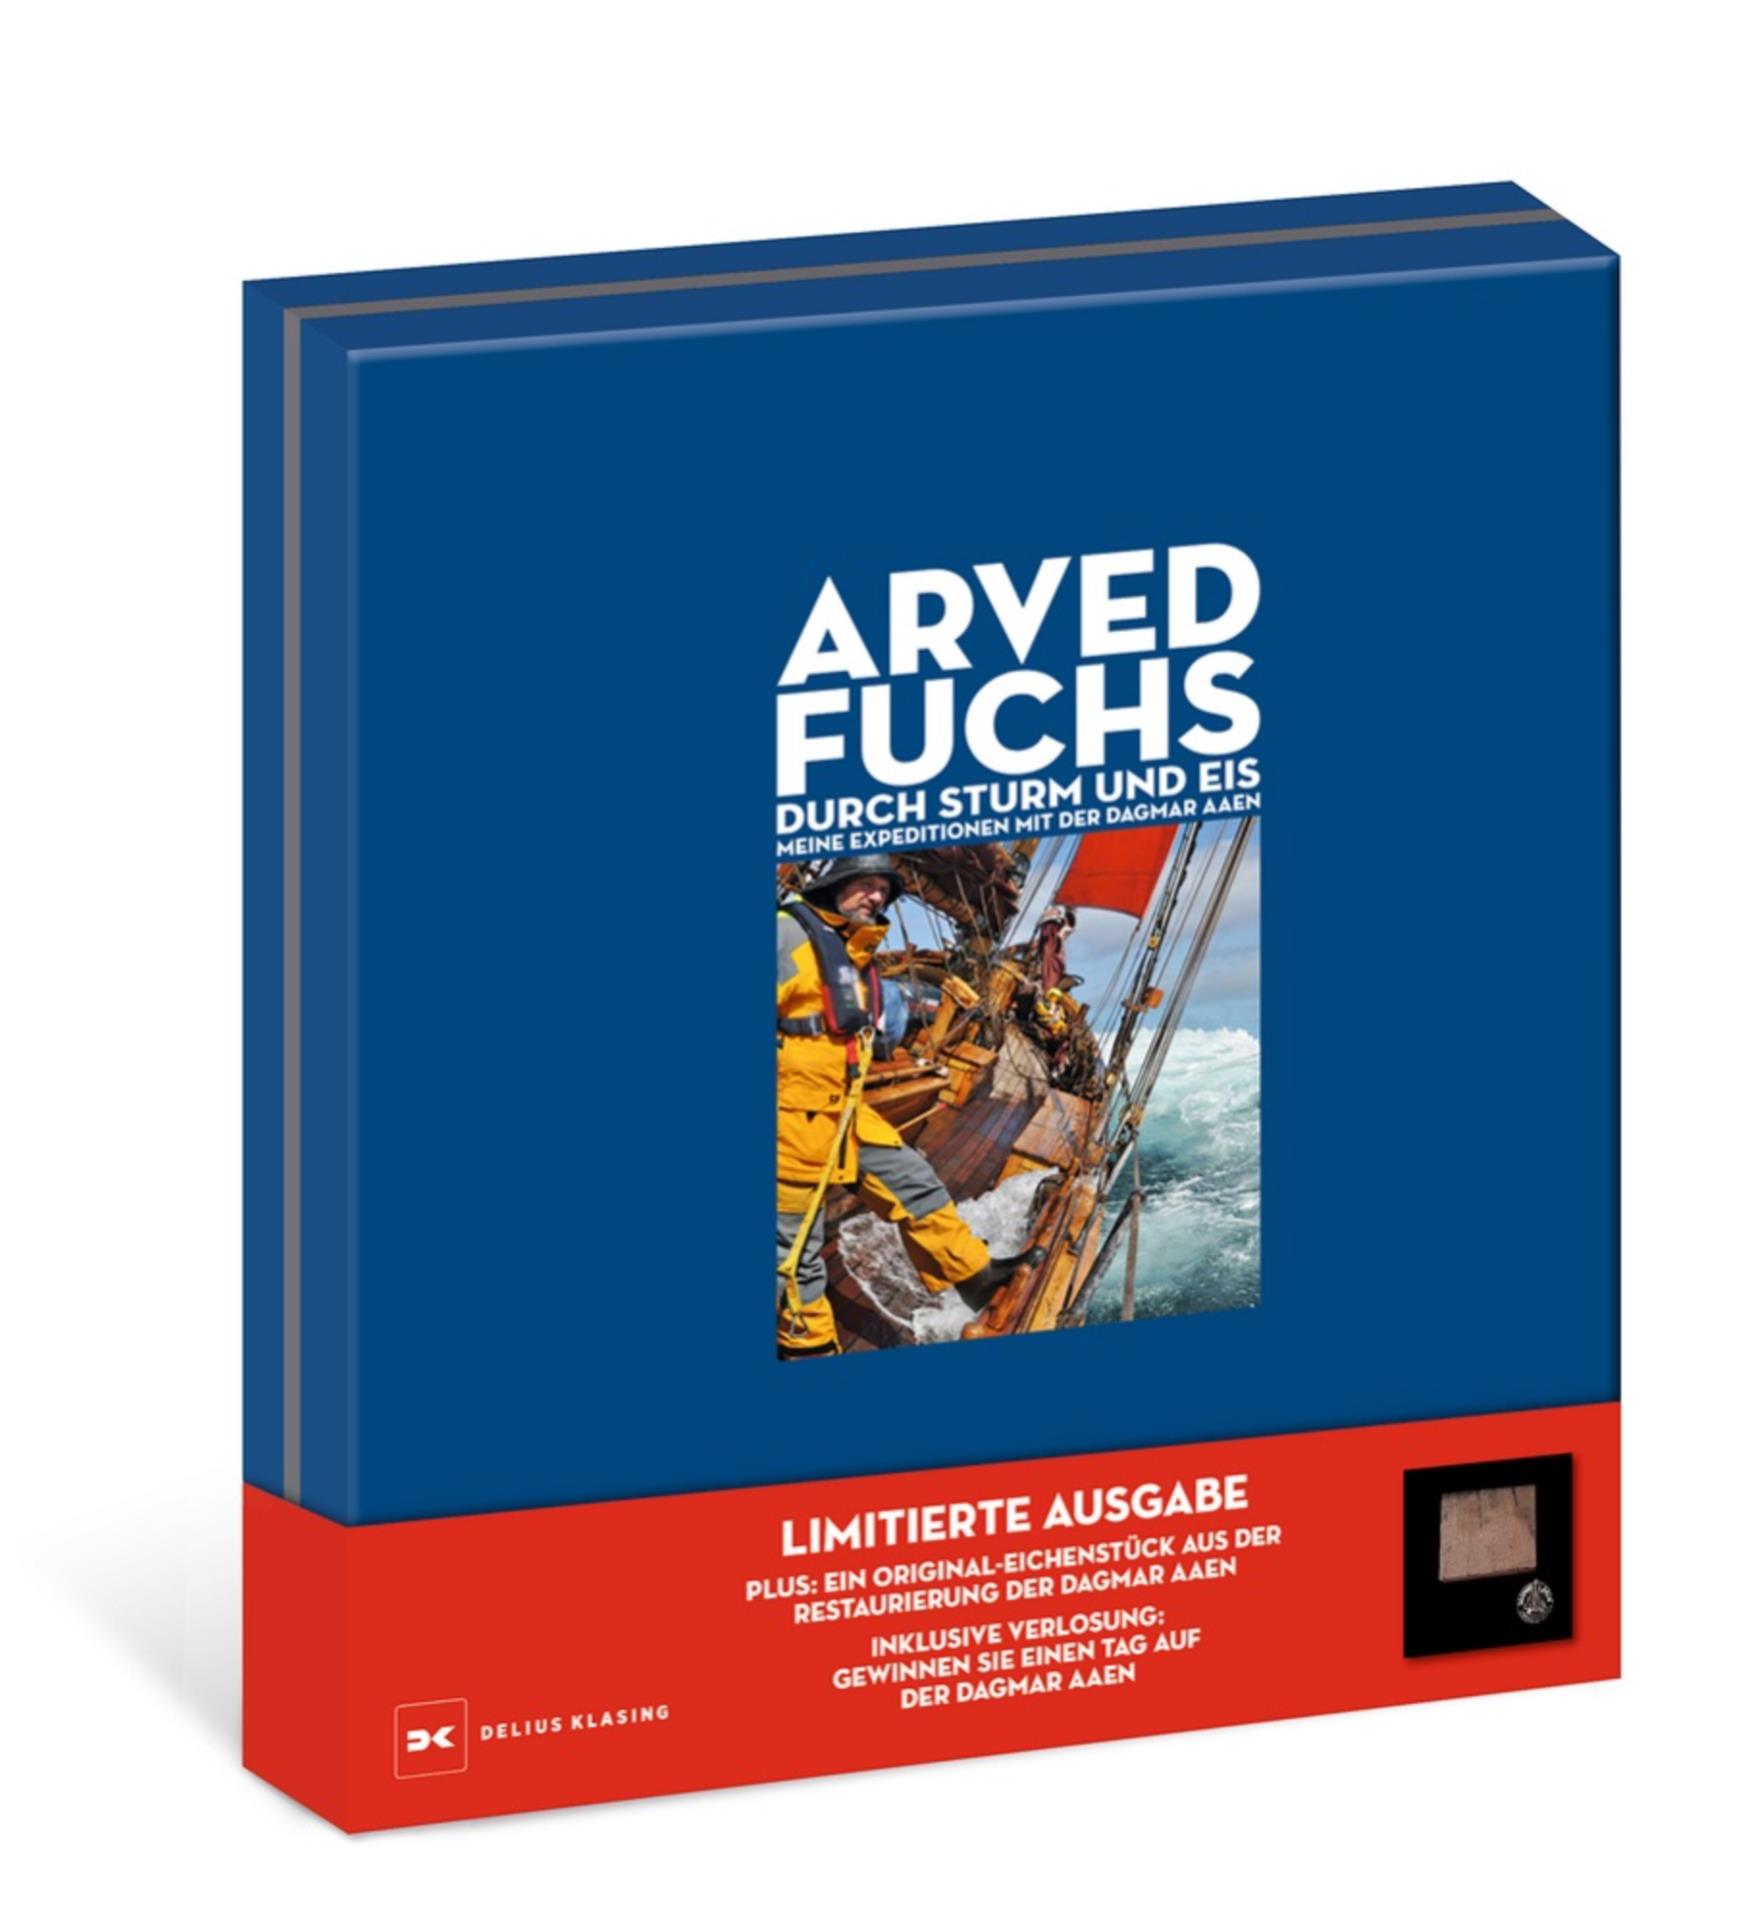 Durch Sturm und Eis - Arved Fuchs (Schmuckbox)